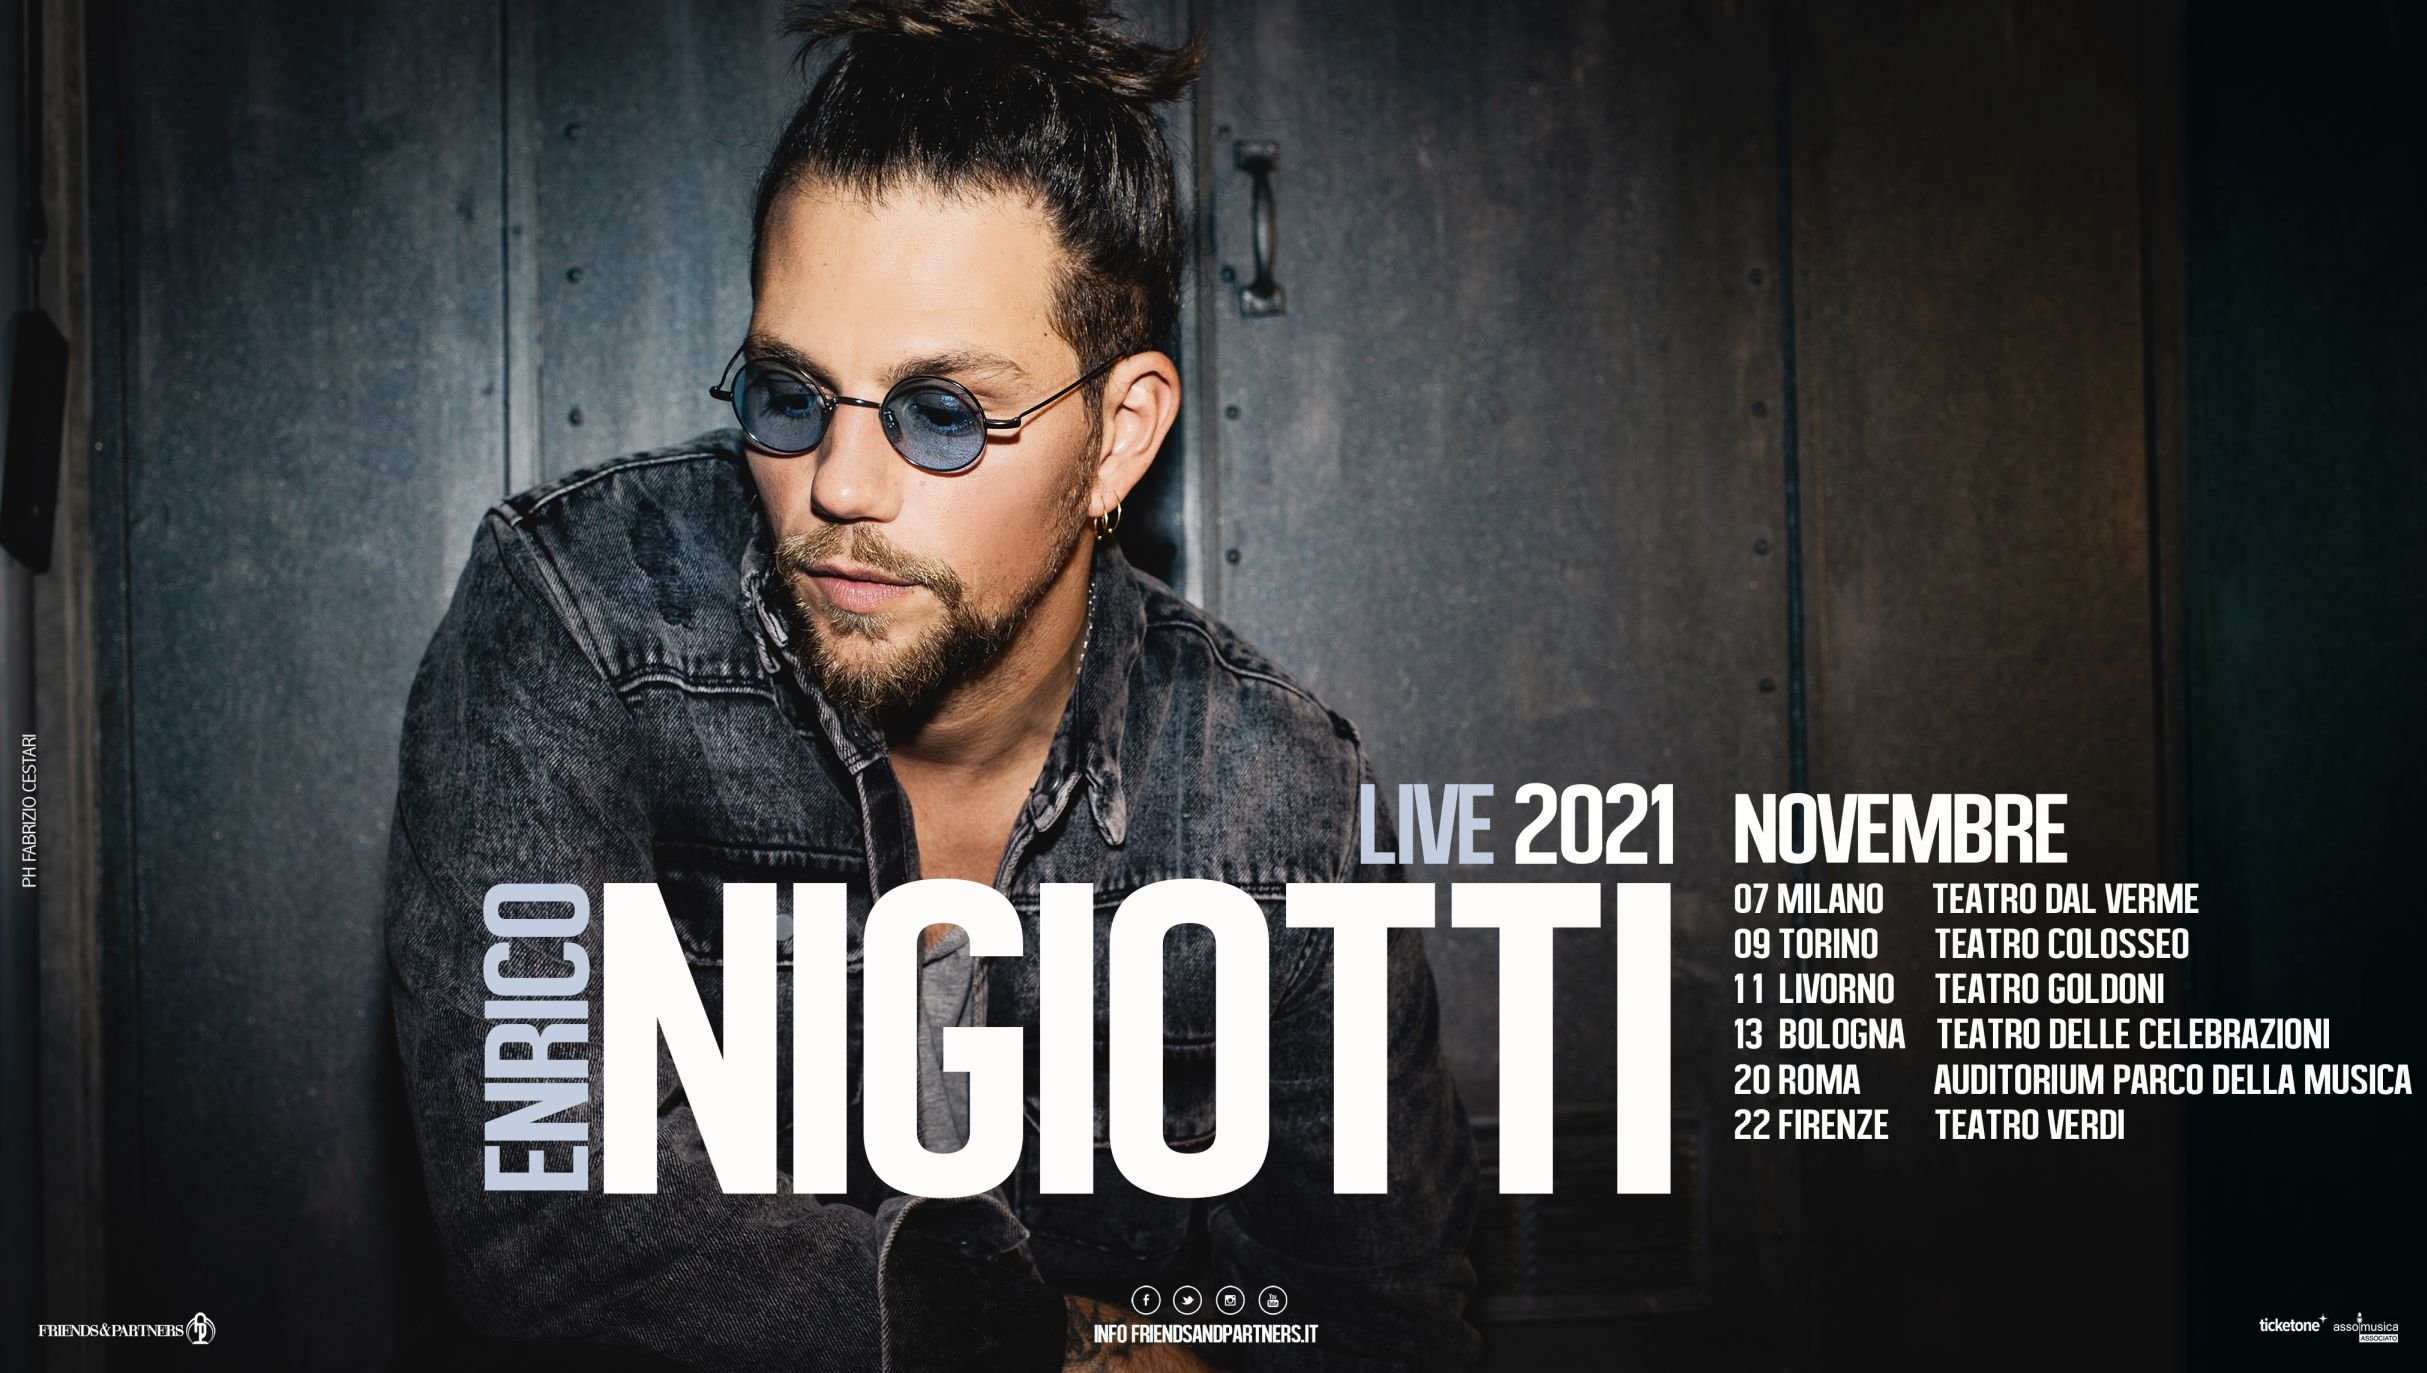 Rinviato all’autunno 2021 il tour teatrale di Enrico Nigiotti